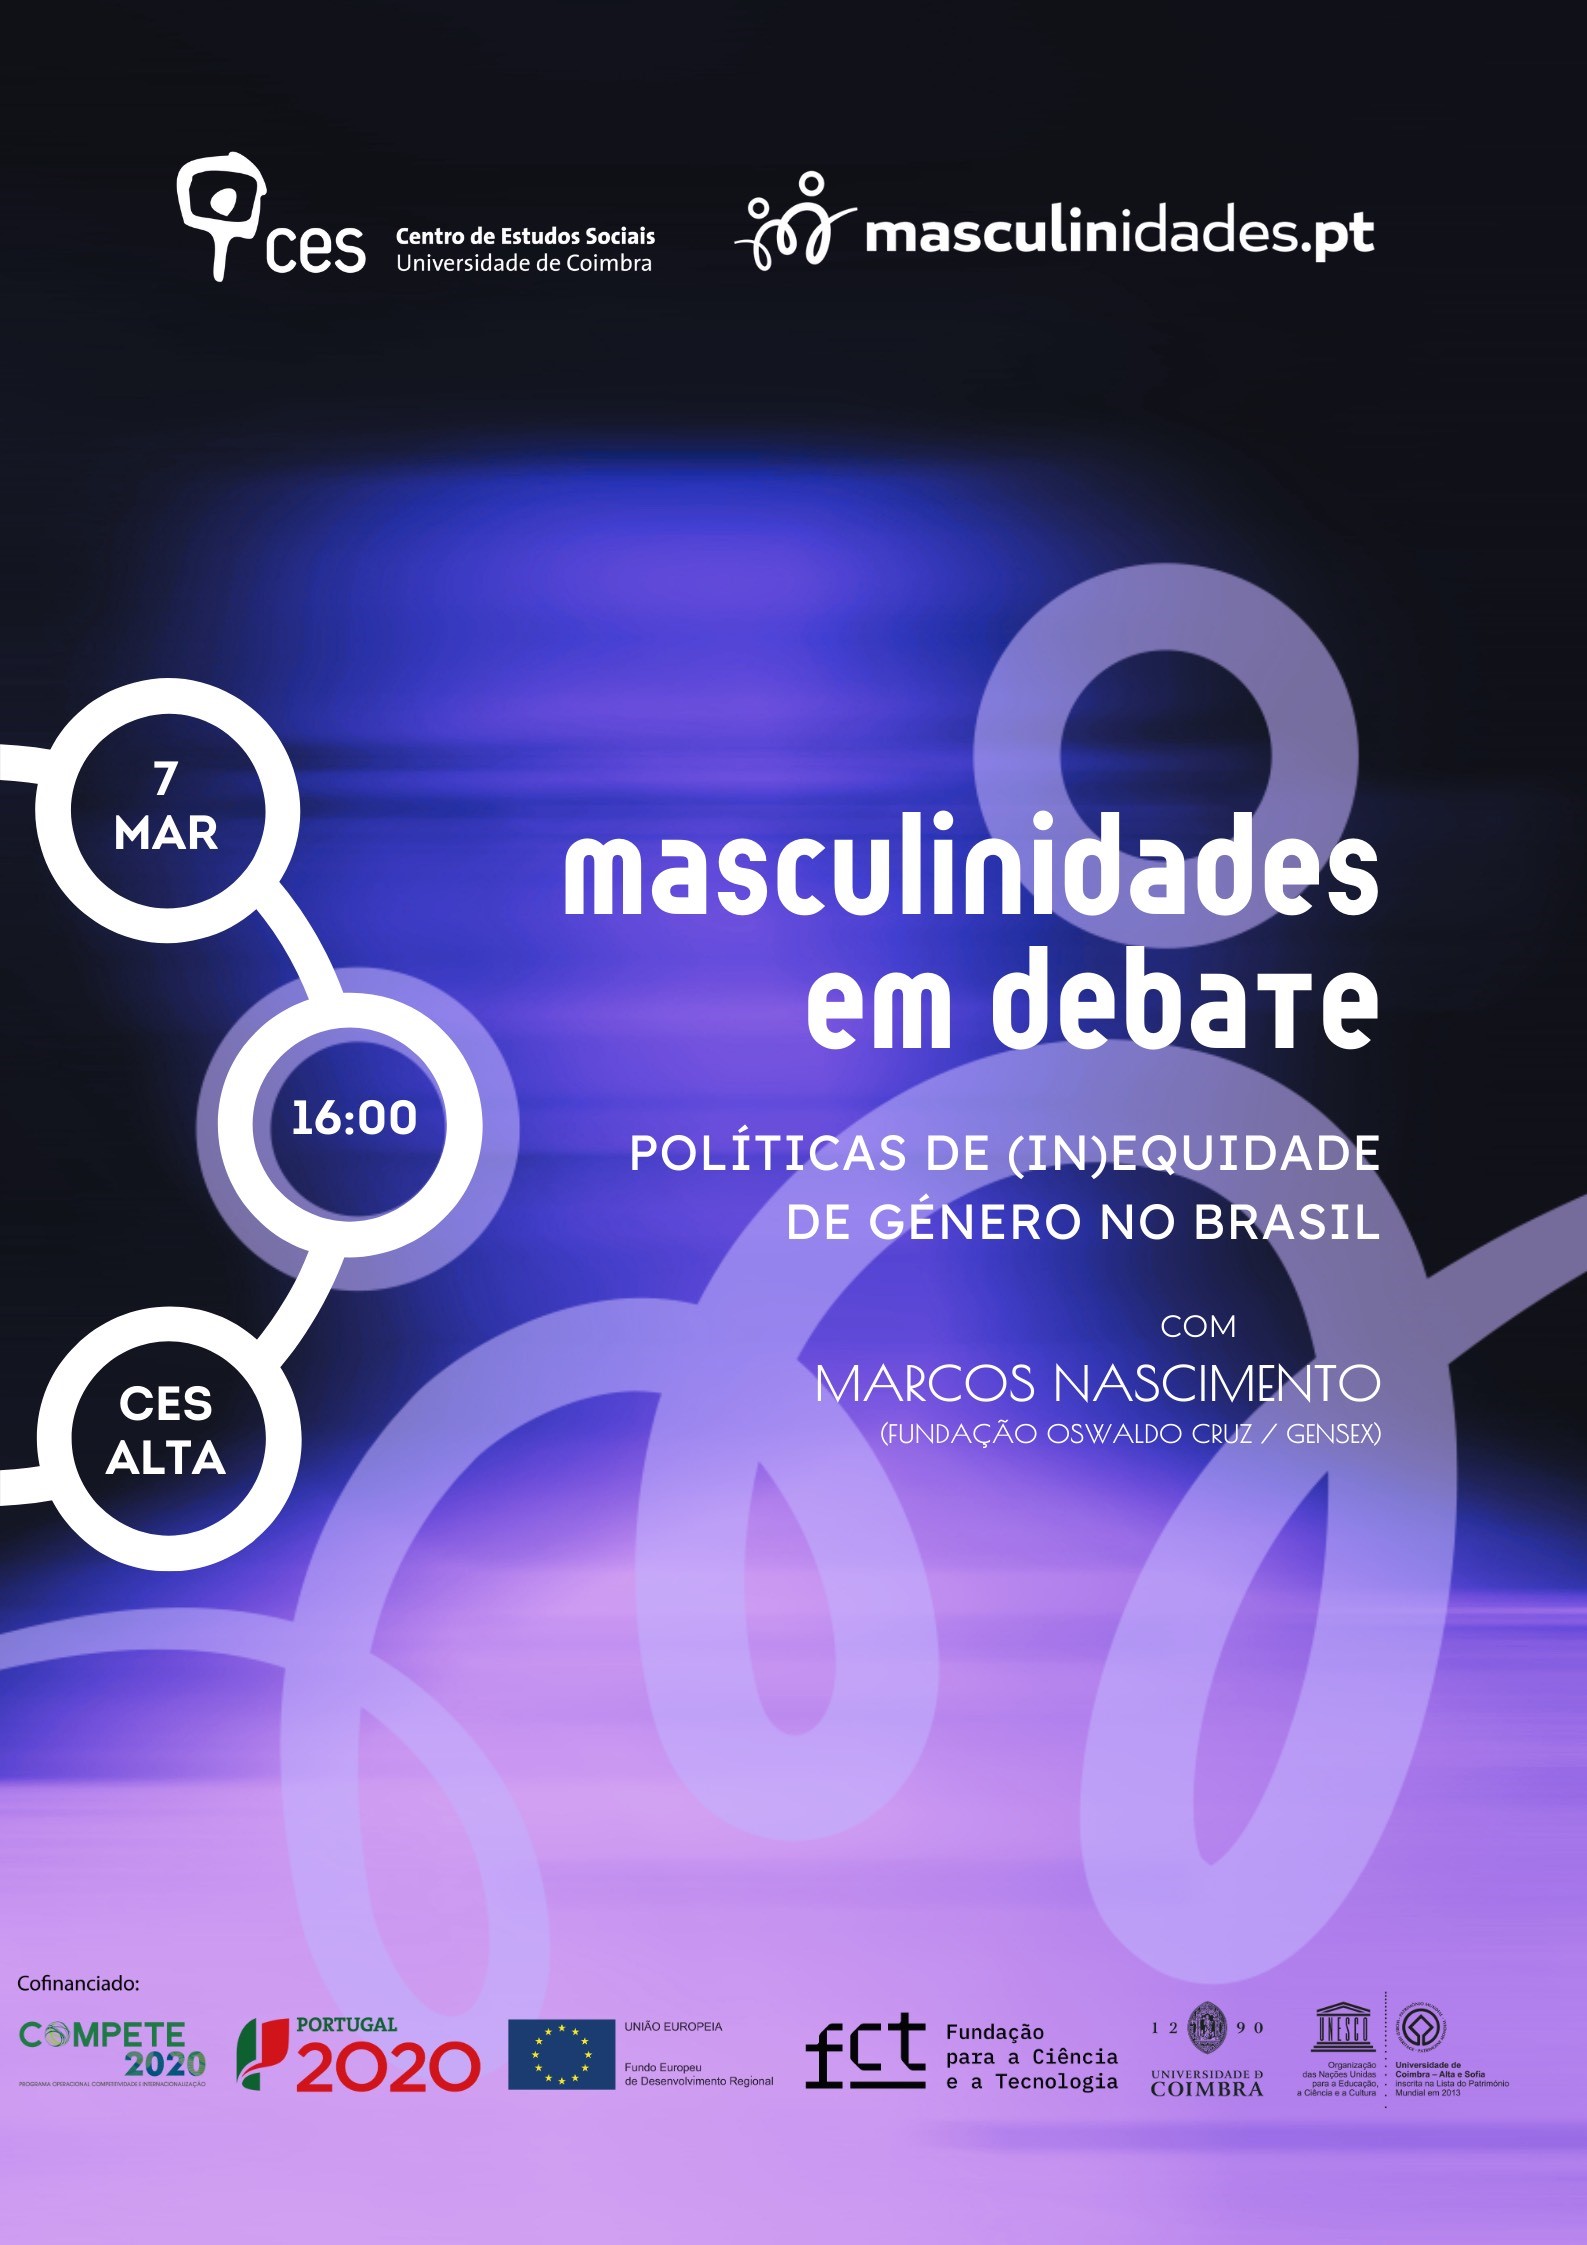 Políticas de (in)equidade de género no Brasil: um debate sobre masculinidades<span id="edit_45145"><script>$(function() { $('#edit_45145').load( "/myces/user/editobj.php?tipo=evento&id=45145" ); });</script></span>